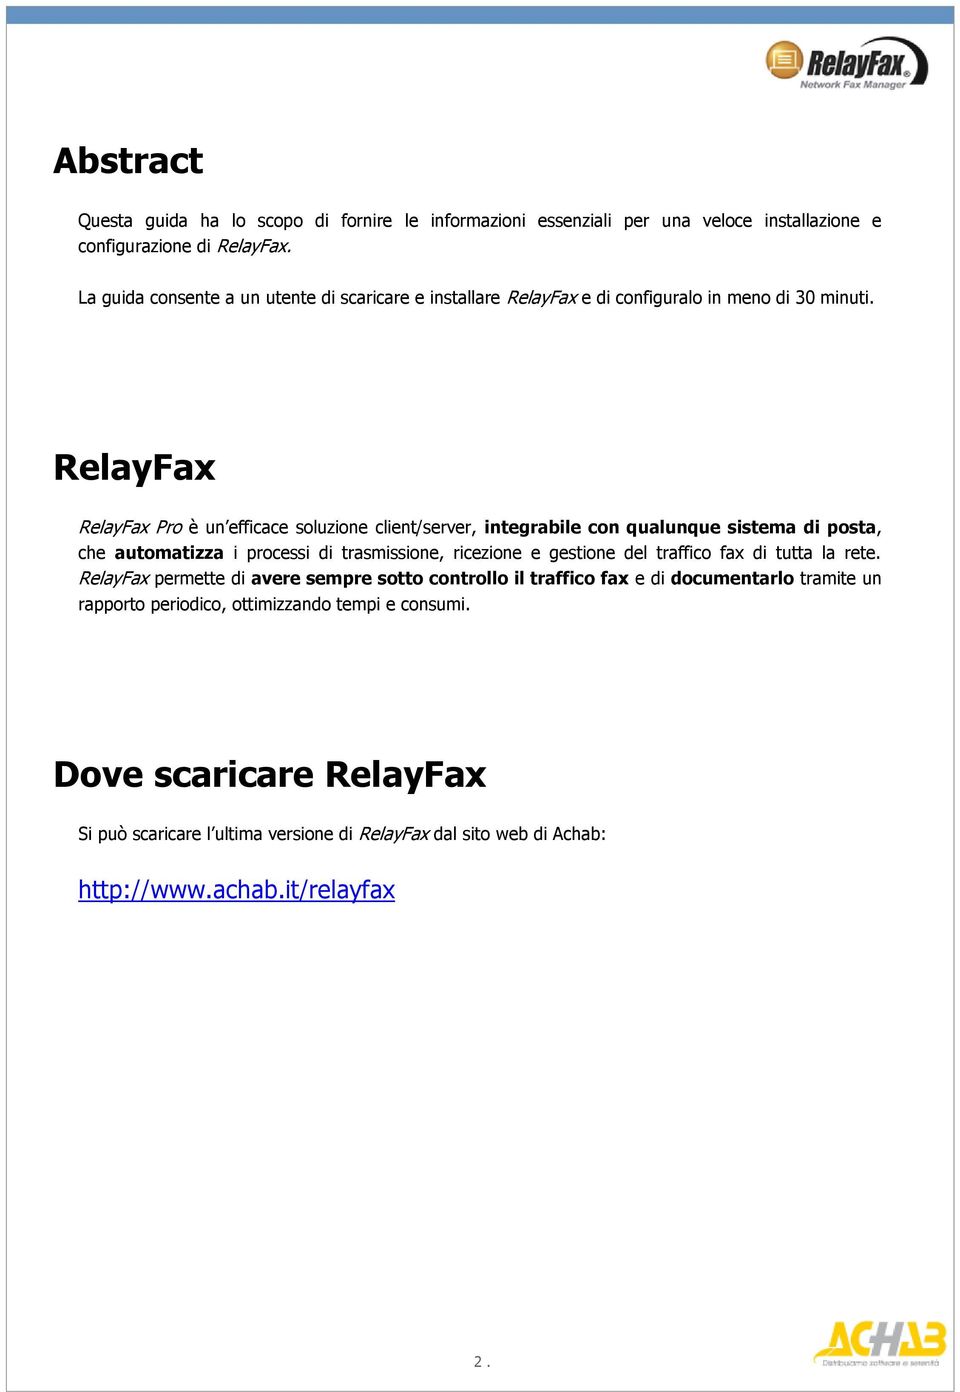 RelayFax RelayFax Pro è un efficace soluzione client/server, integrabile con qualunque sistema di posta, che automatizza i processi di trasmissione, ricezione e gestione del